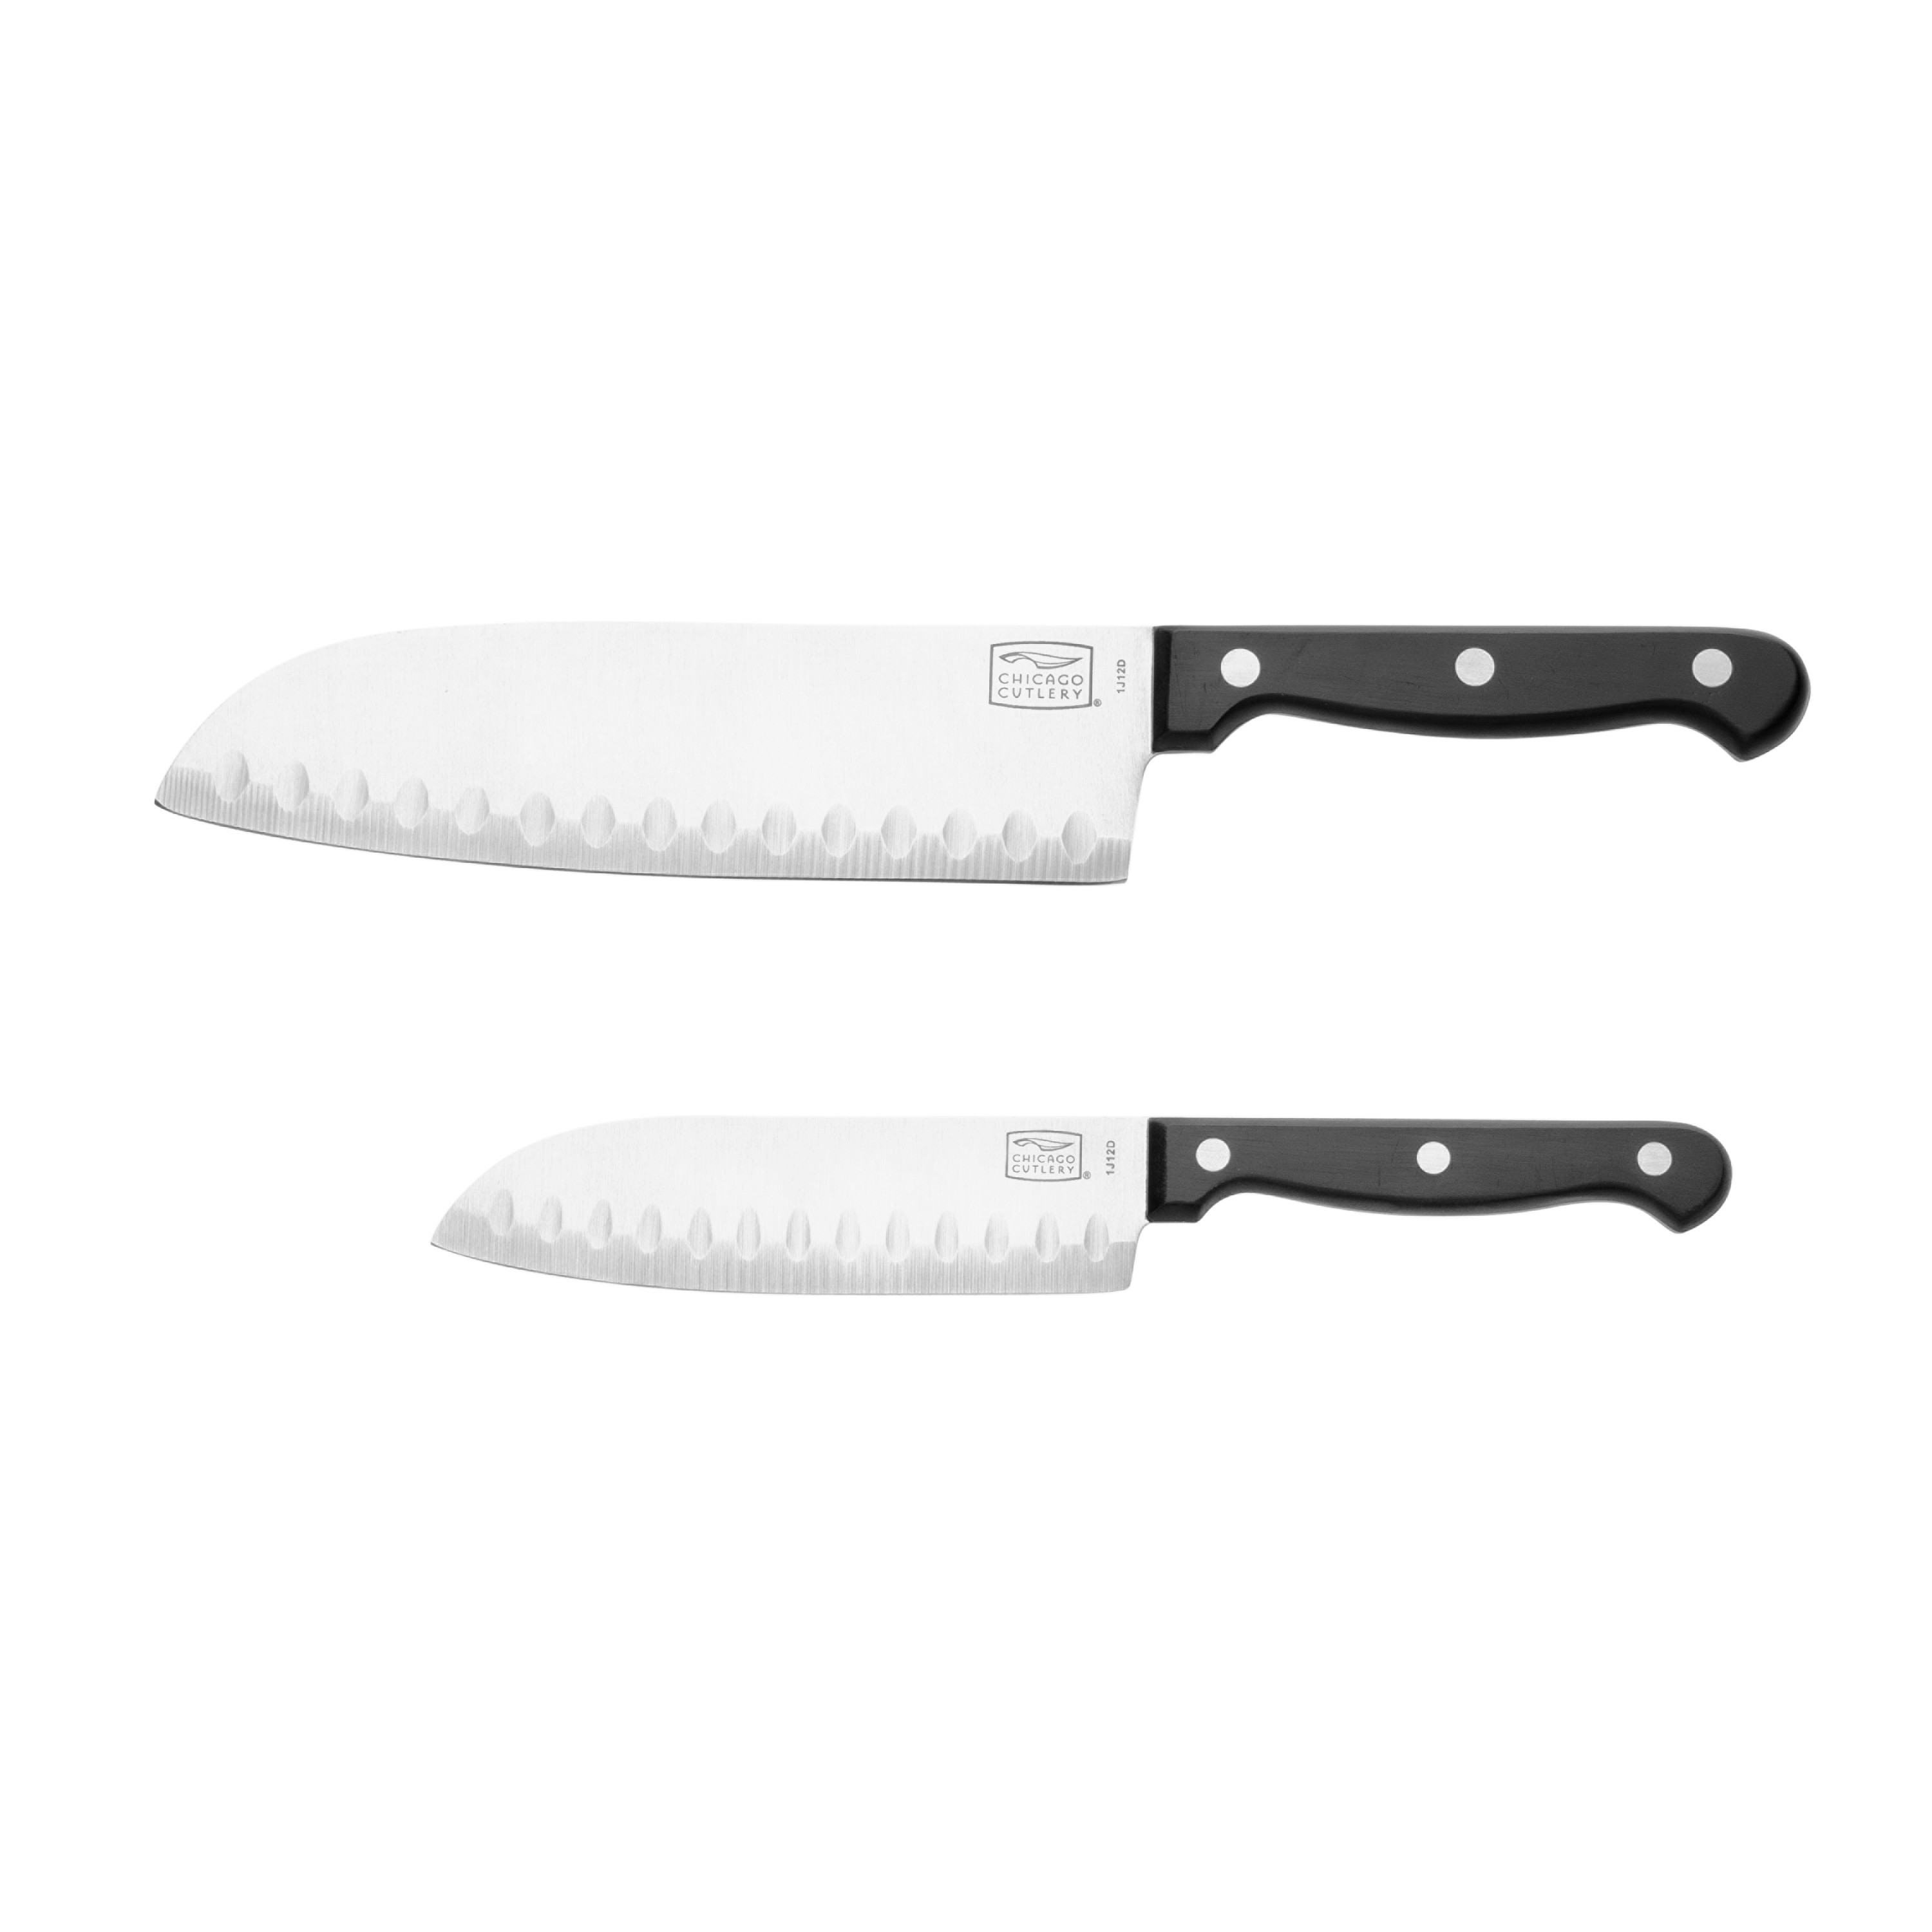 Chicago Cutlery Essentials 2-piece Knife Set